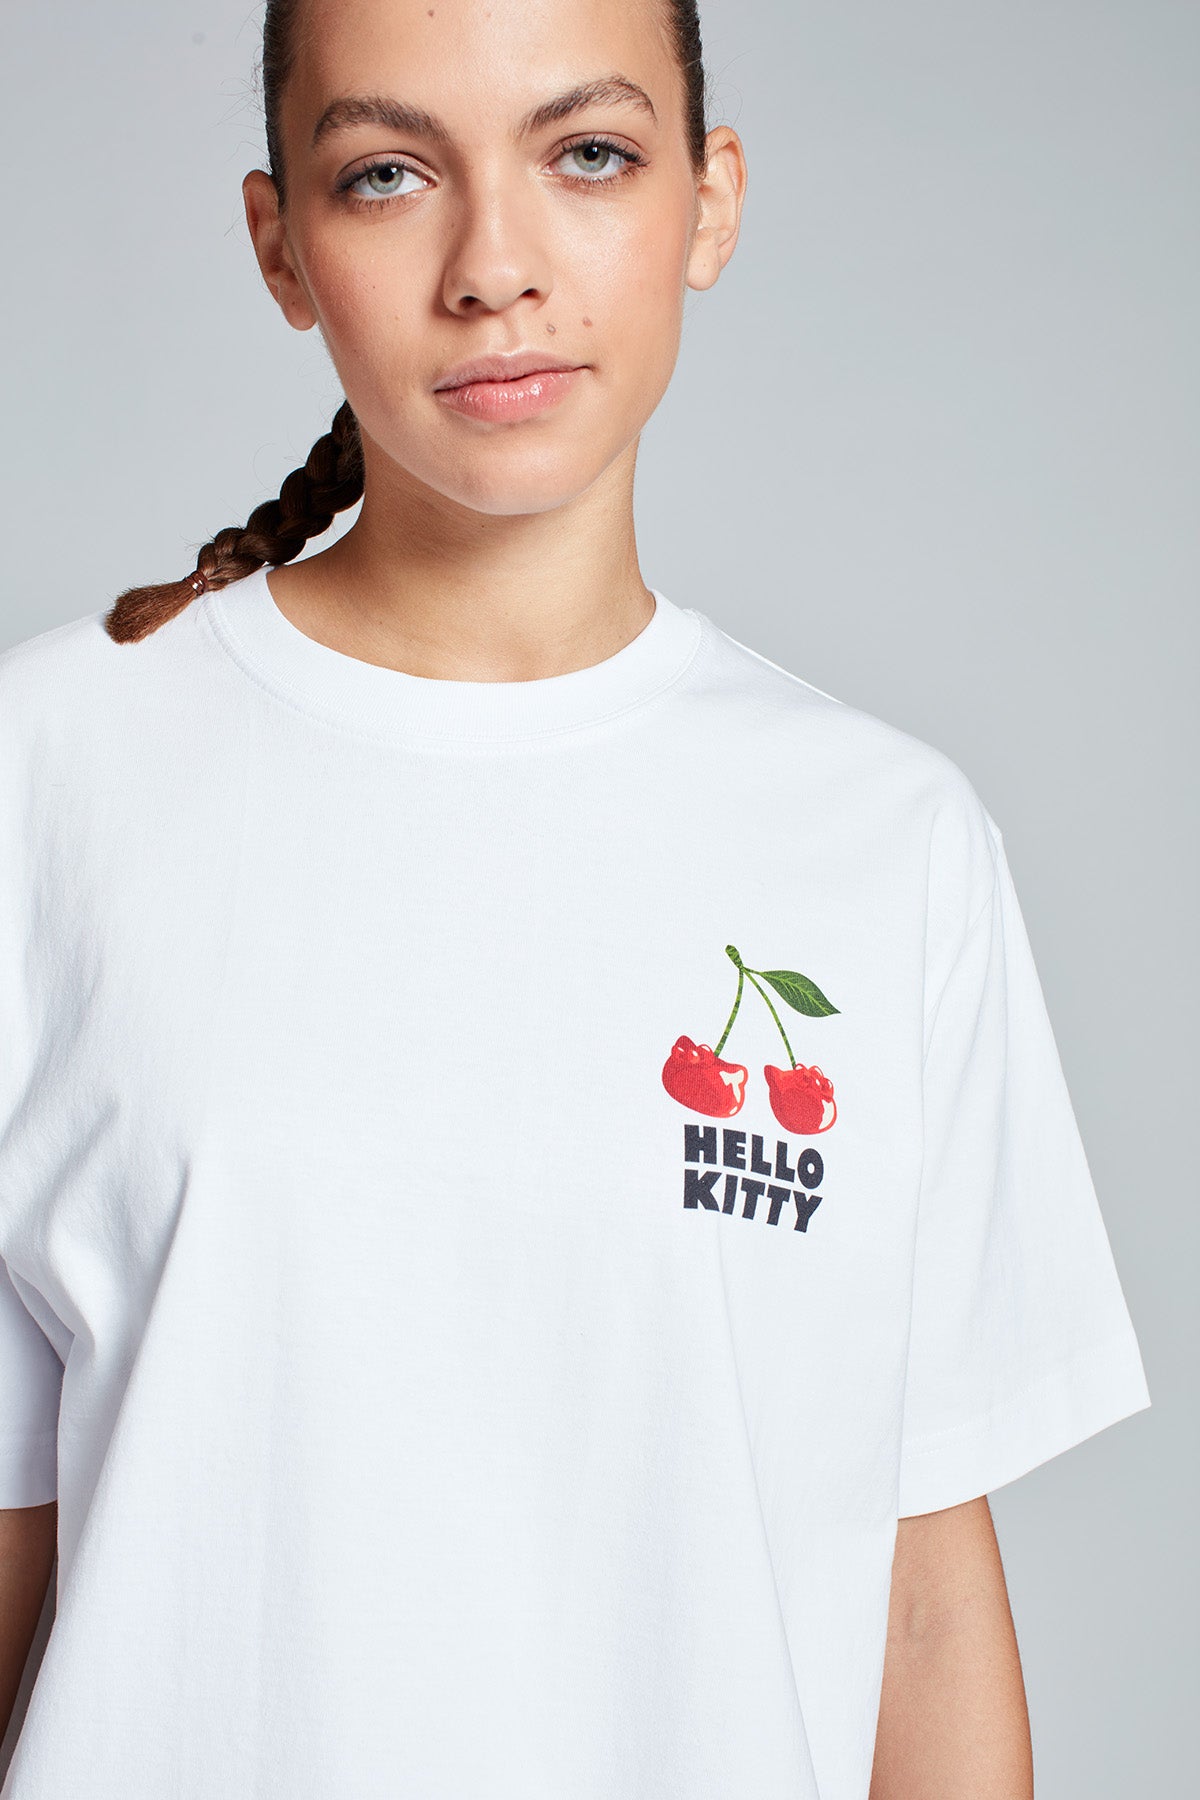 Hello Kitty Cherryland T-shirt in White